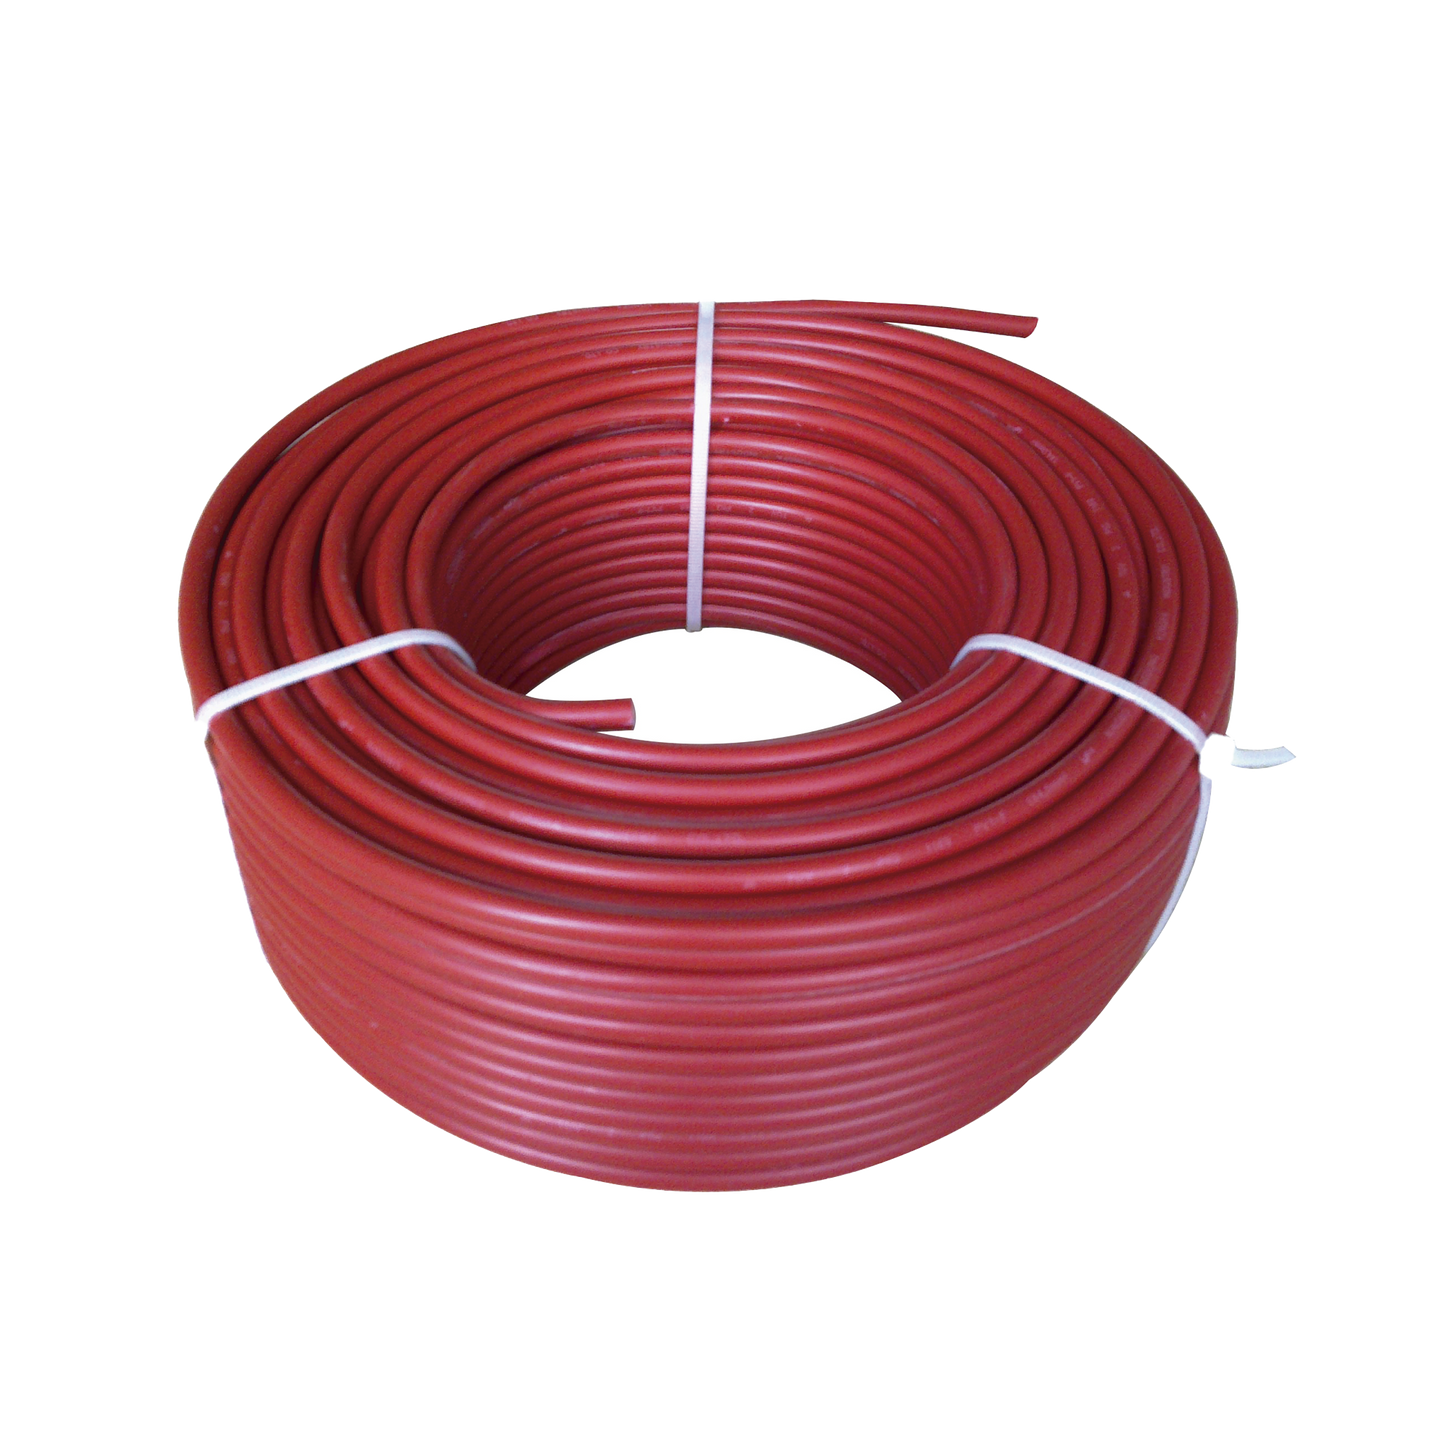 Cable Fotovoltaico Rojo / 6mm² (10AWG) / Material COBRE / 2000V / Rollo de 50 m